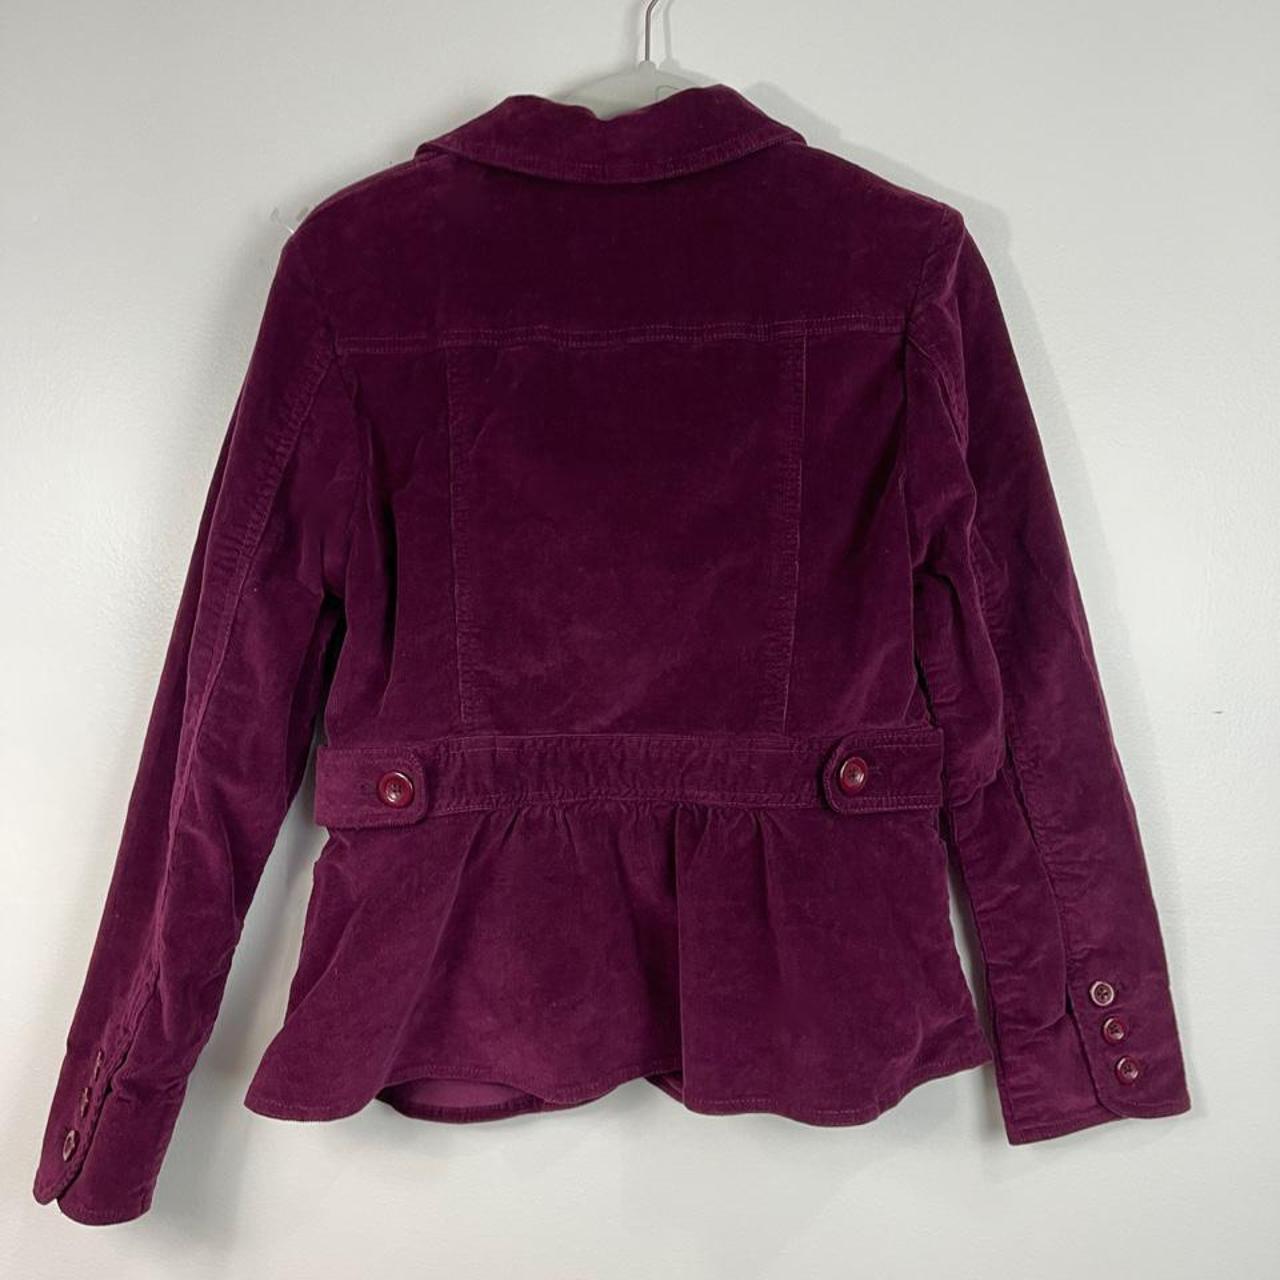 Corduroy jacket in a beautiful deep burgundy purple... - Depop